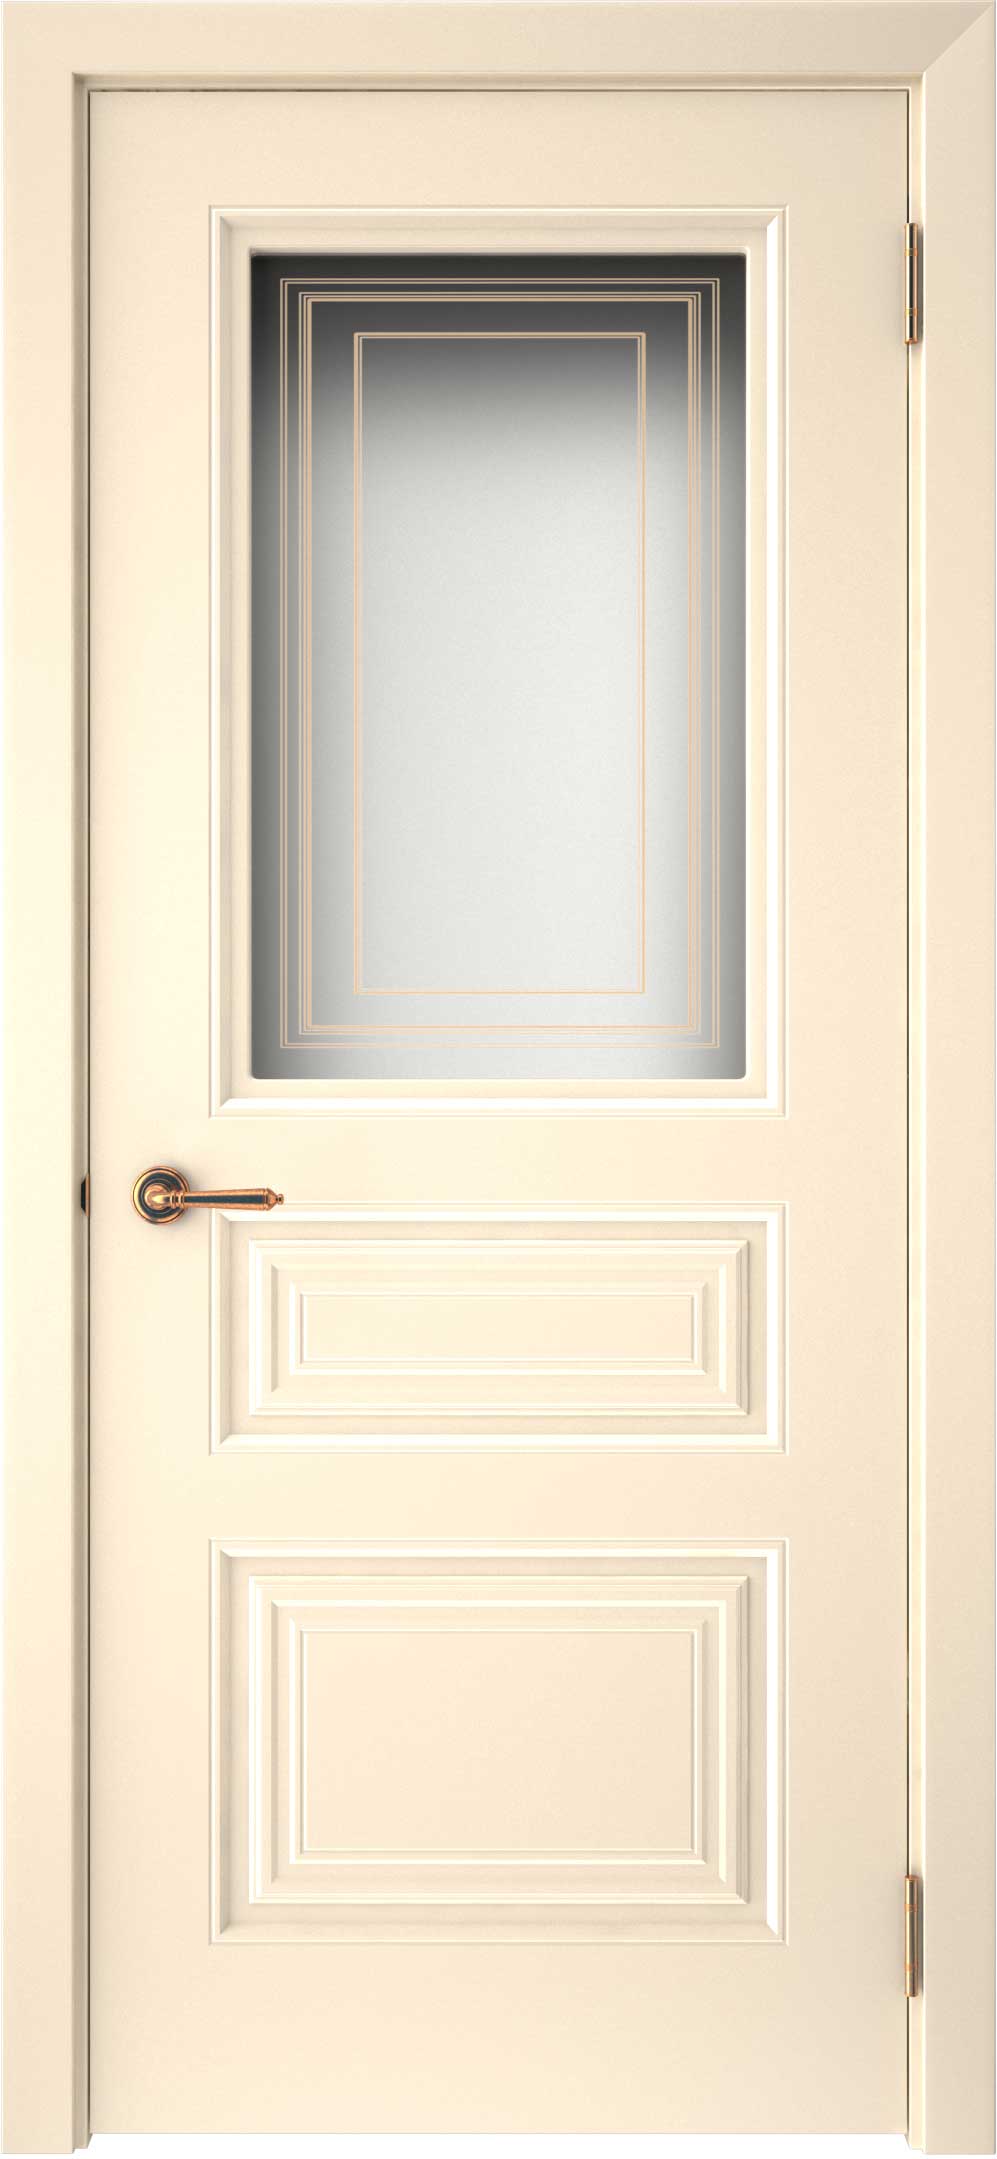 Двери крашеные (Эмаль) ТЕКОНА Смальта-44 со стеклом Ваниль ral размер 200 х 90 см. артикул F0000093310